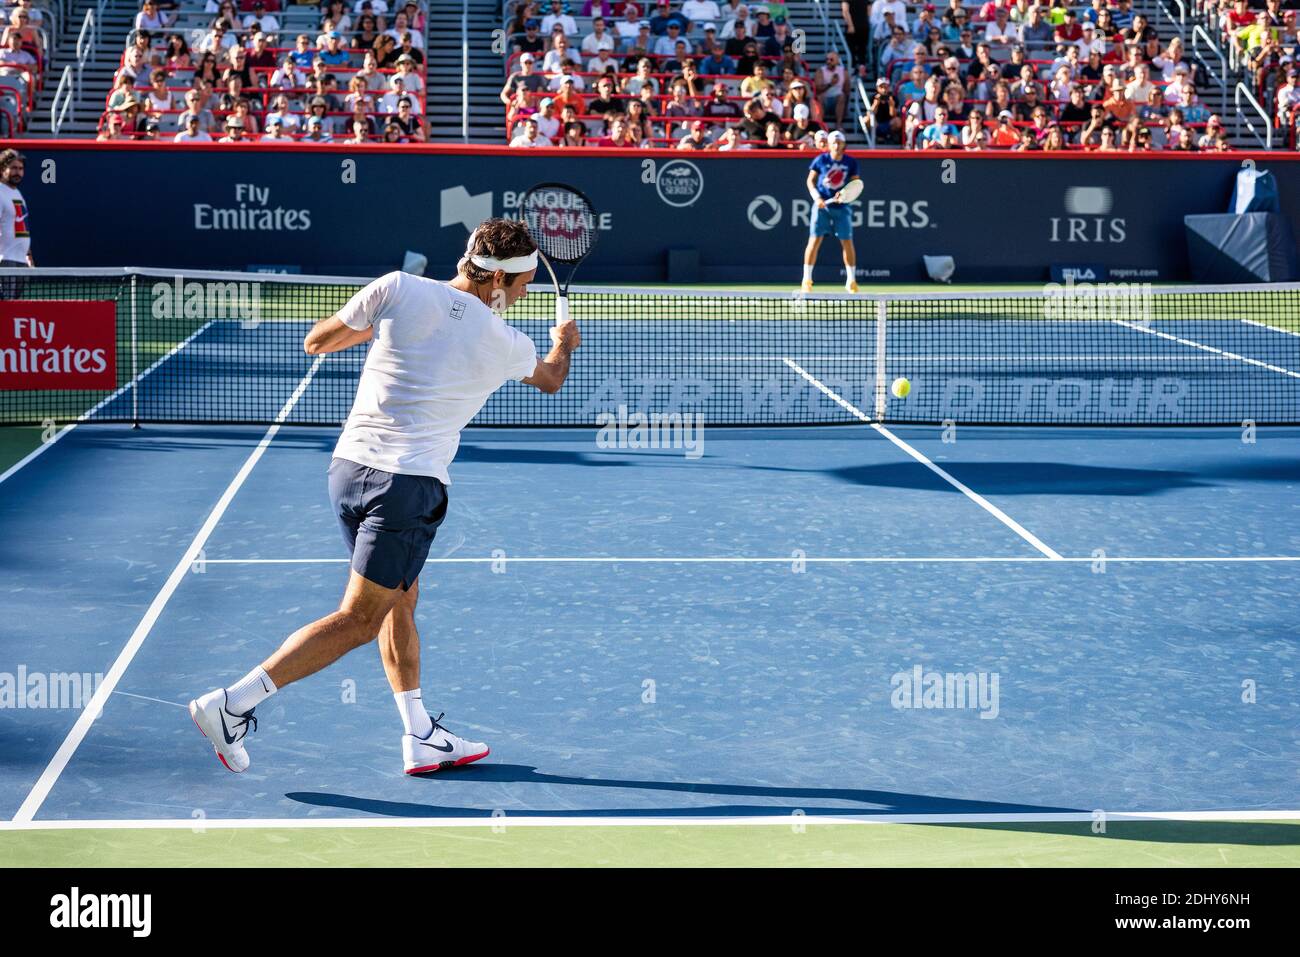 Montreal, Kanada - Aujgust 5., 2017: Roger Federer übt während des Rogers Cup im zentralen Gericht. Stockfoto